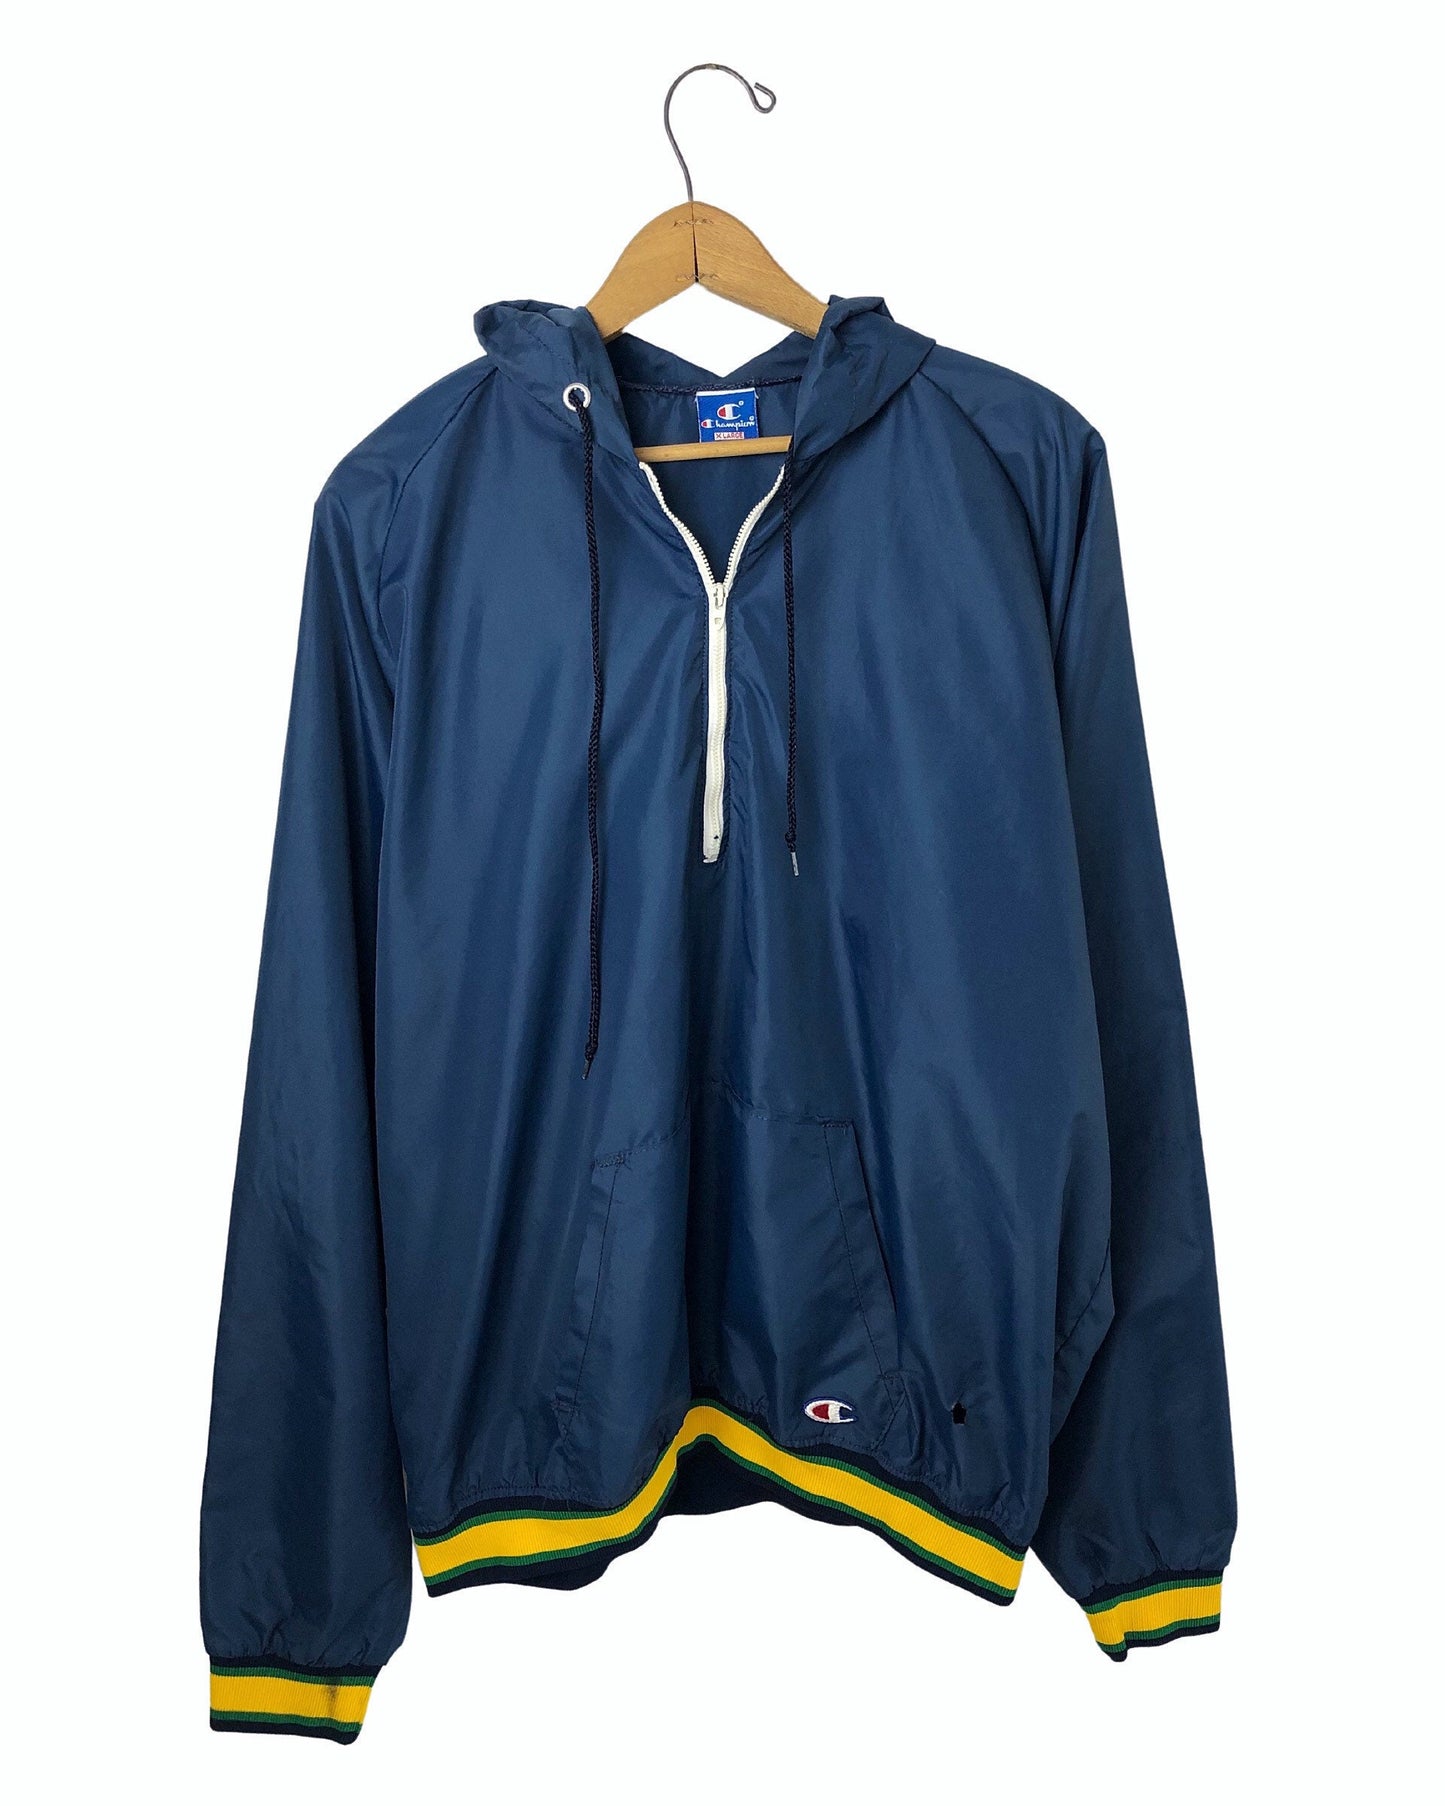 Vintage 90’s NOTRE DAME Fighting Irish CHAMPION 100% Nylon 1/4 Hooded Windbreaker Jacket Size X-Large